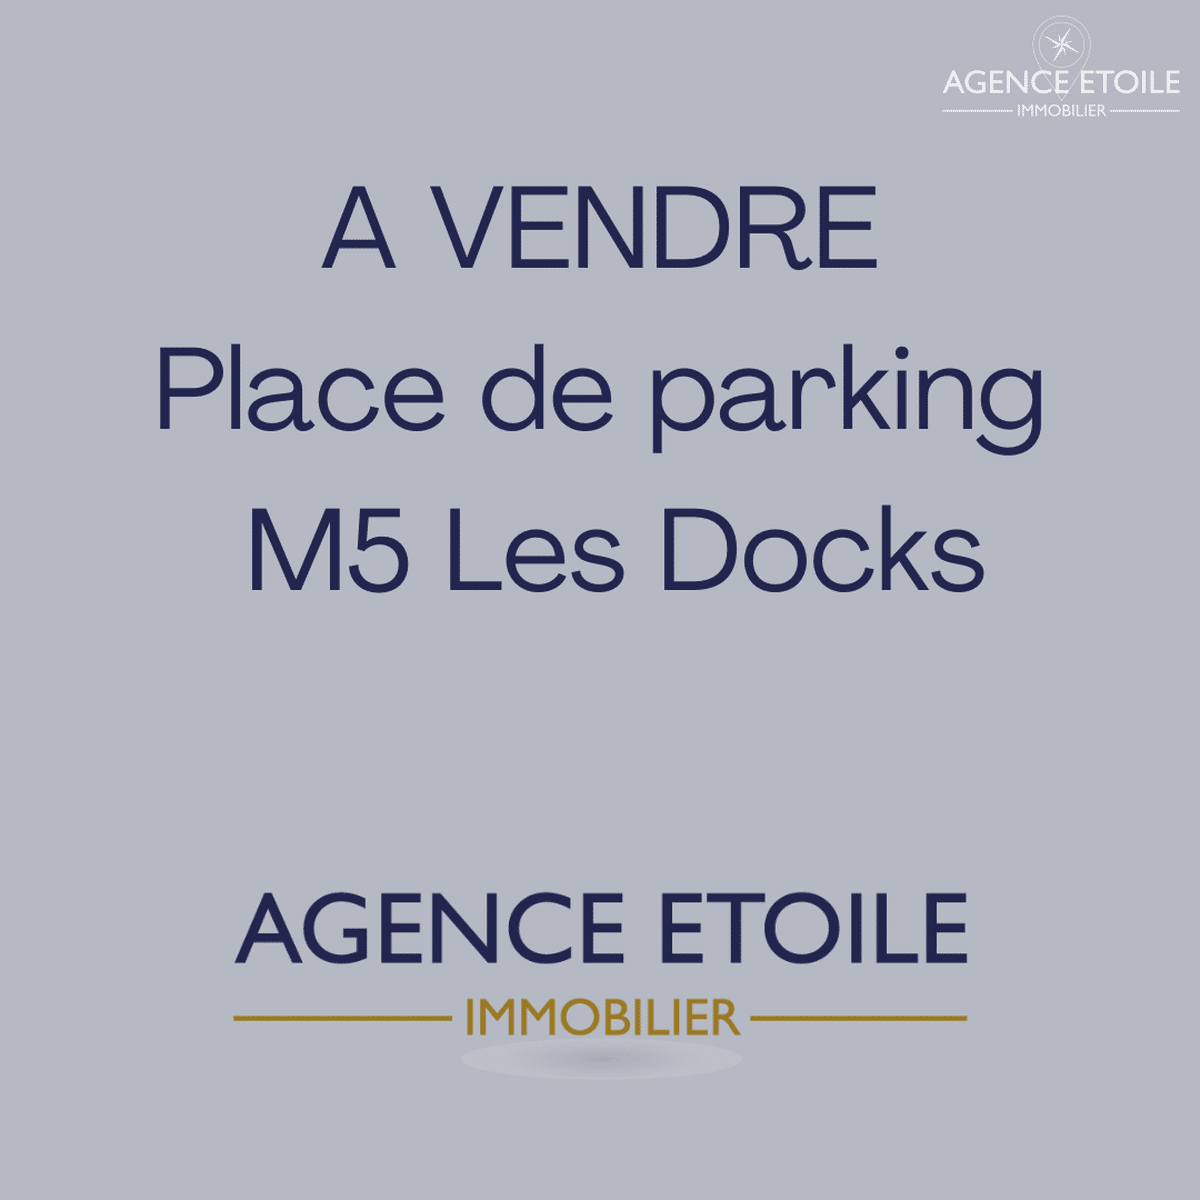 Marseille 2nd parking place M5 Les Docks